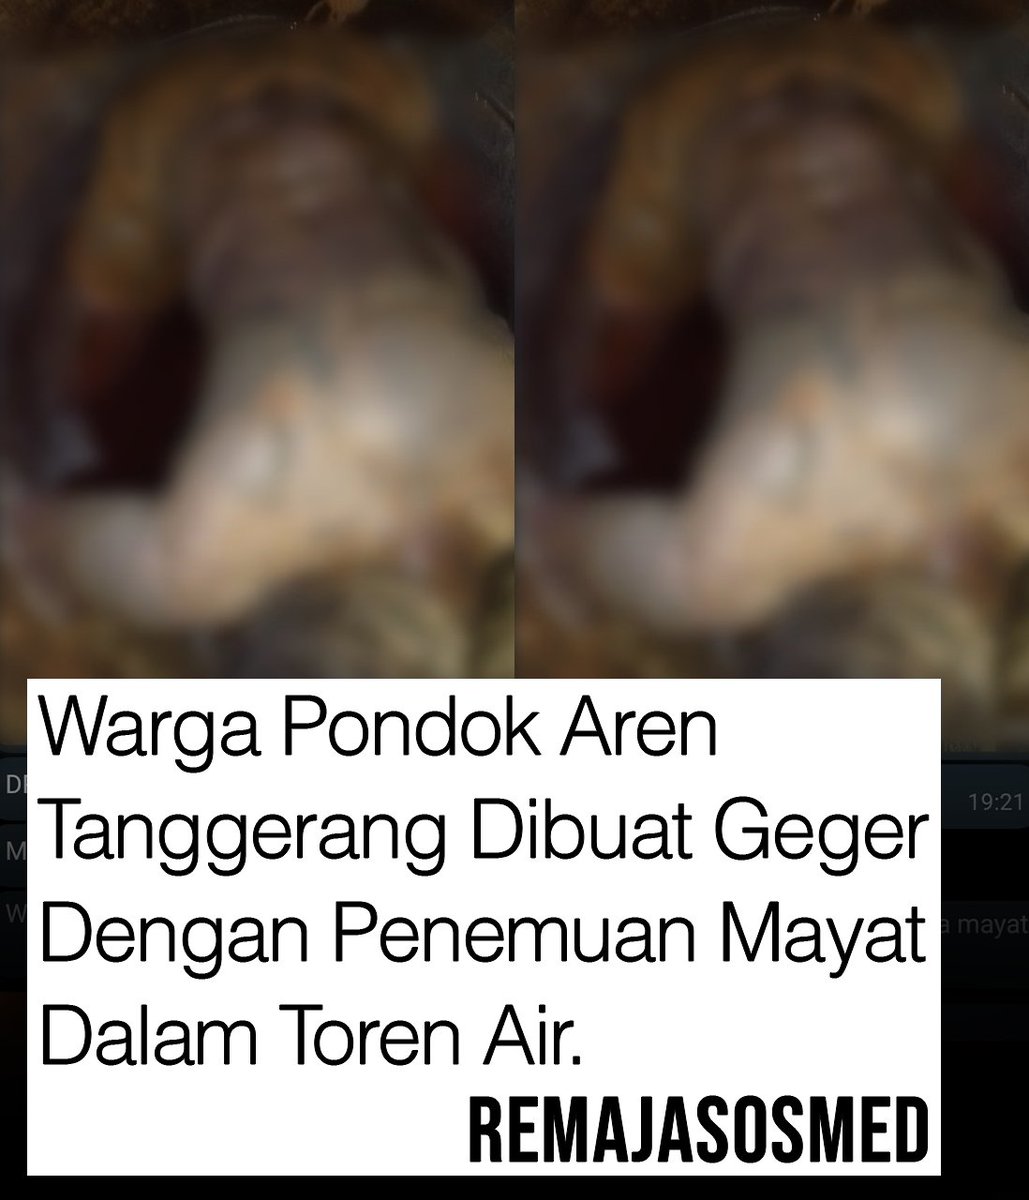 Seorang pria ditemukan tewas dalam sebuah toren air di Pondok Aren, Tangerang Selatan. Korban ditemukan dalam kondisi telah membusuk.

Kapolsek Pondok Aren Kompol Bambang Askar Sodiq menjelaskan mayat tersebut ditemukan sekitar pukul 18.30 WIB. Jasad korban ditemukan di dalam